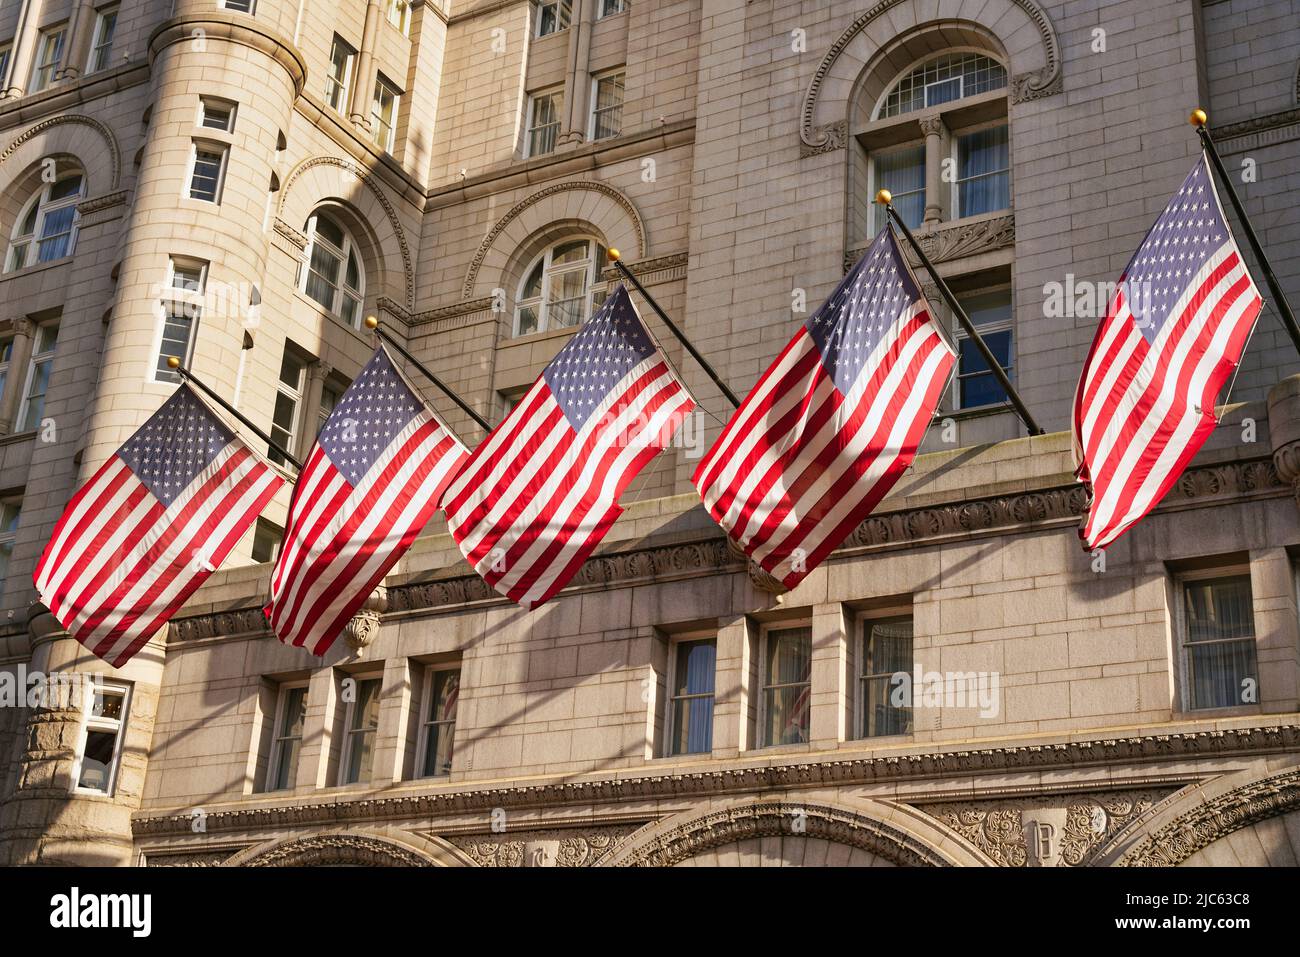 Bandiere STATUNITENSI sul vecchio edificio dell'ufficio postale di Washington, D.C., USA. Bandiere AMERICANE con stelle e strisce alla luce del sole. Foto Stock